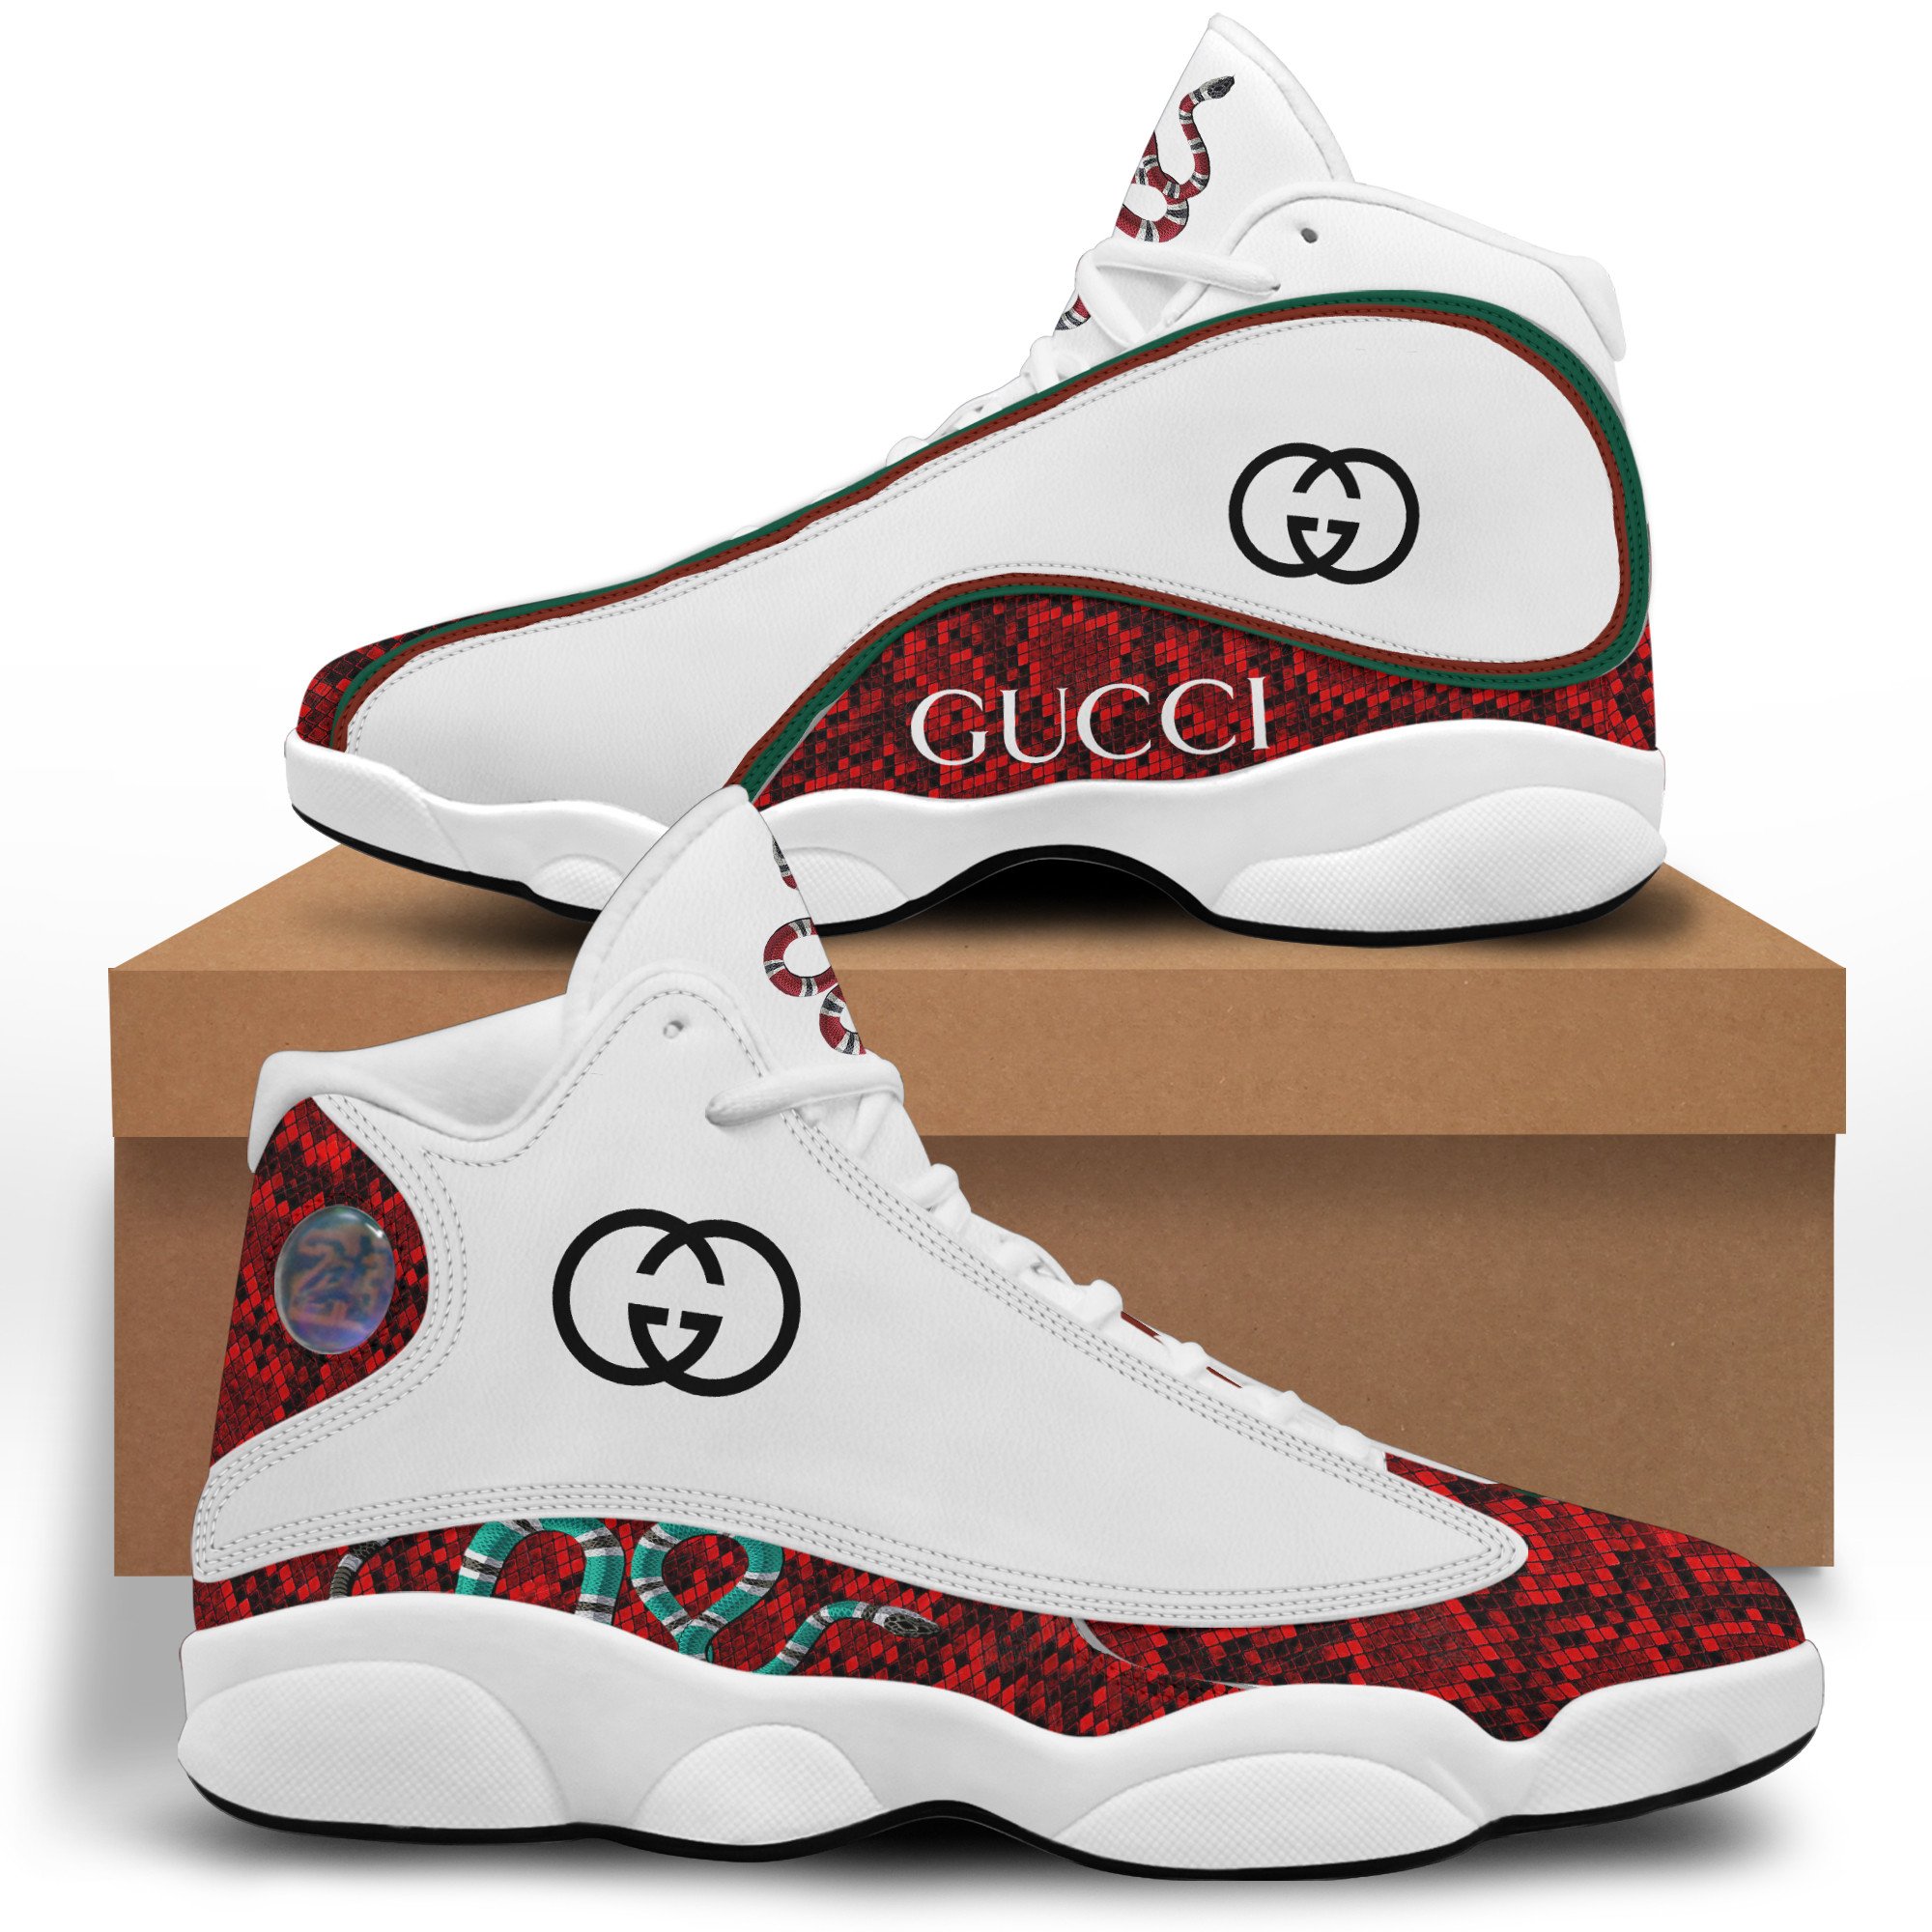 GC Snake Air Jordan 13 Sneakers Shoes ver 18